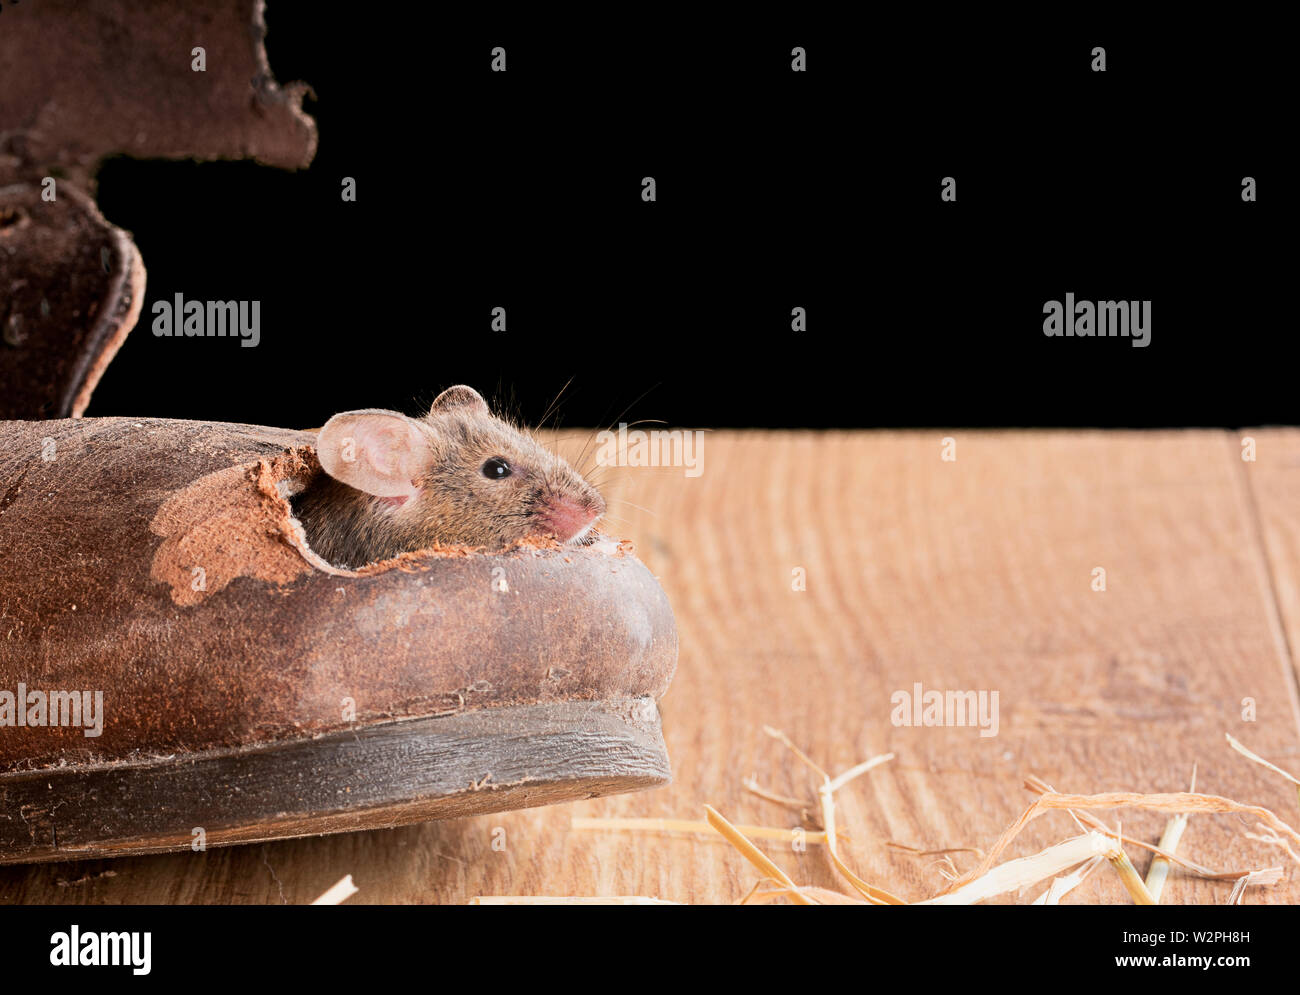 La souris brune grimpe dans un vieux boot en studio environnement Banque D'Images